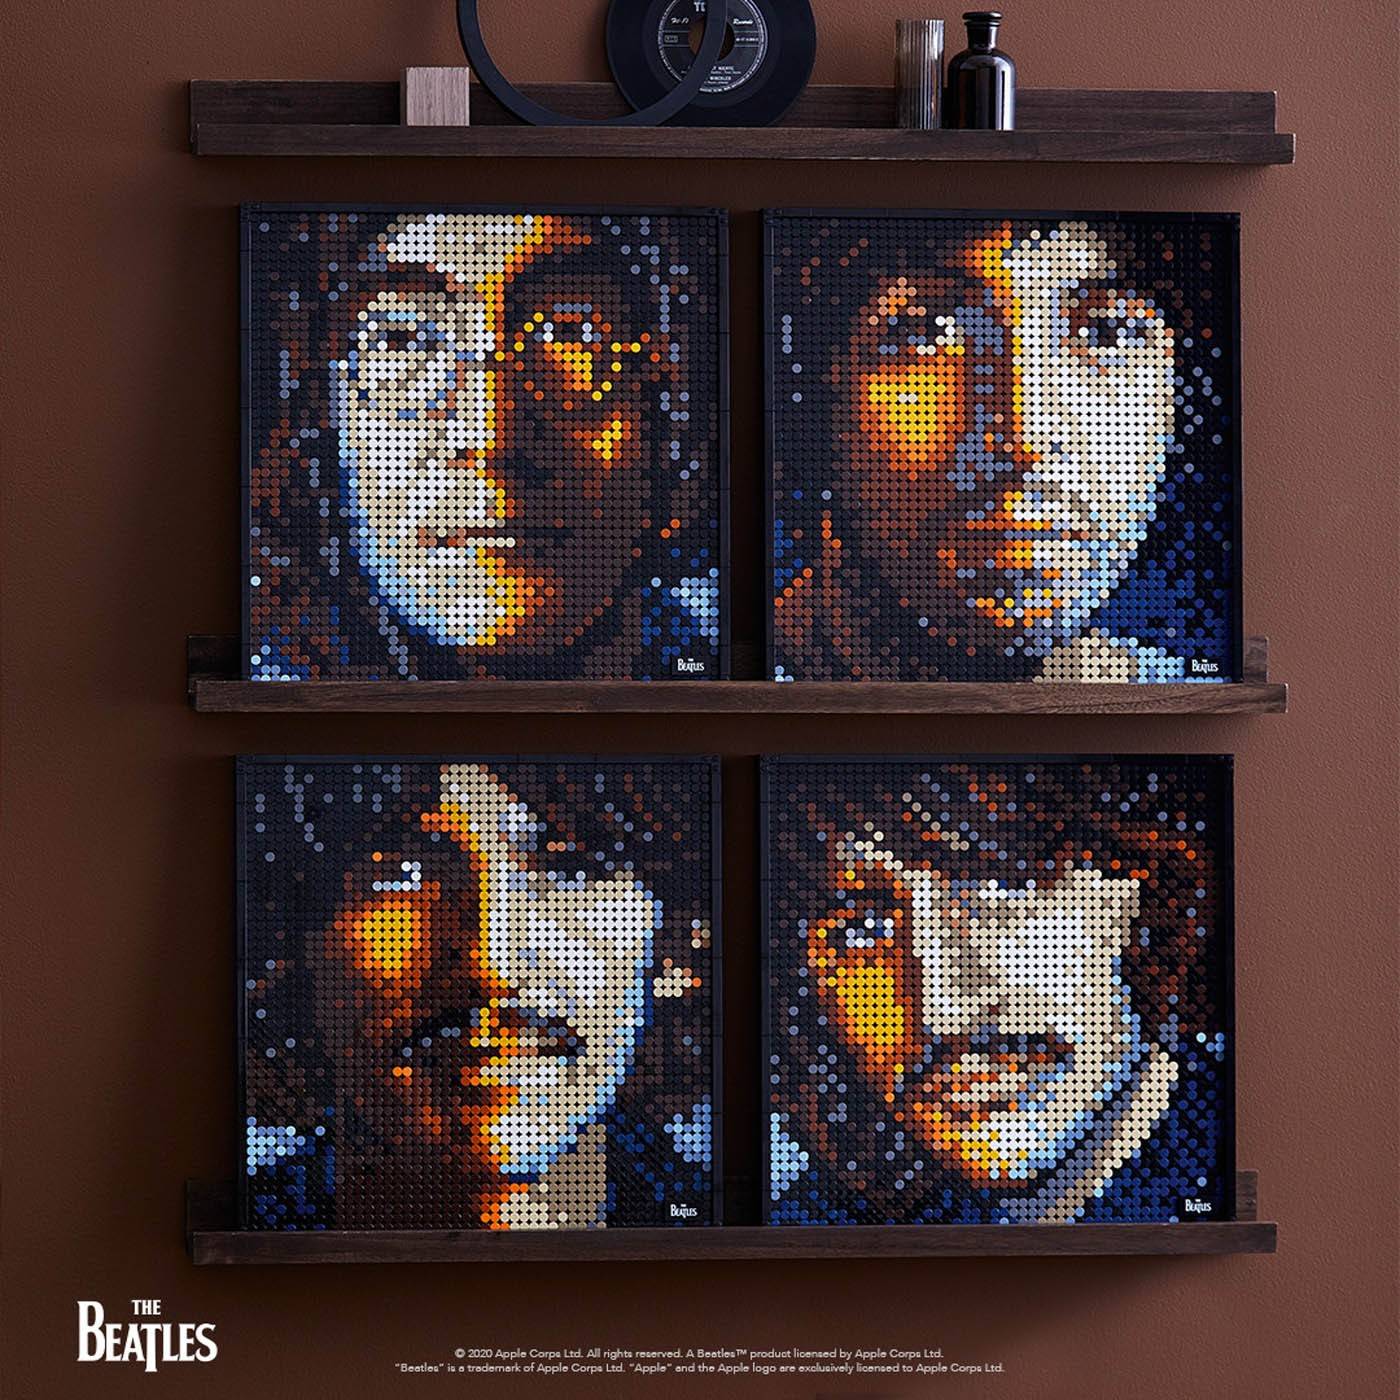 LEGO ART The Beatles obraz 4w1 klocki 31198